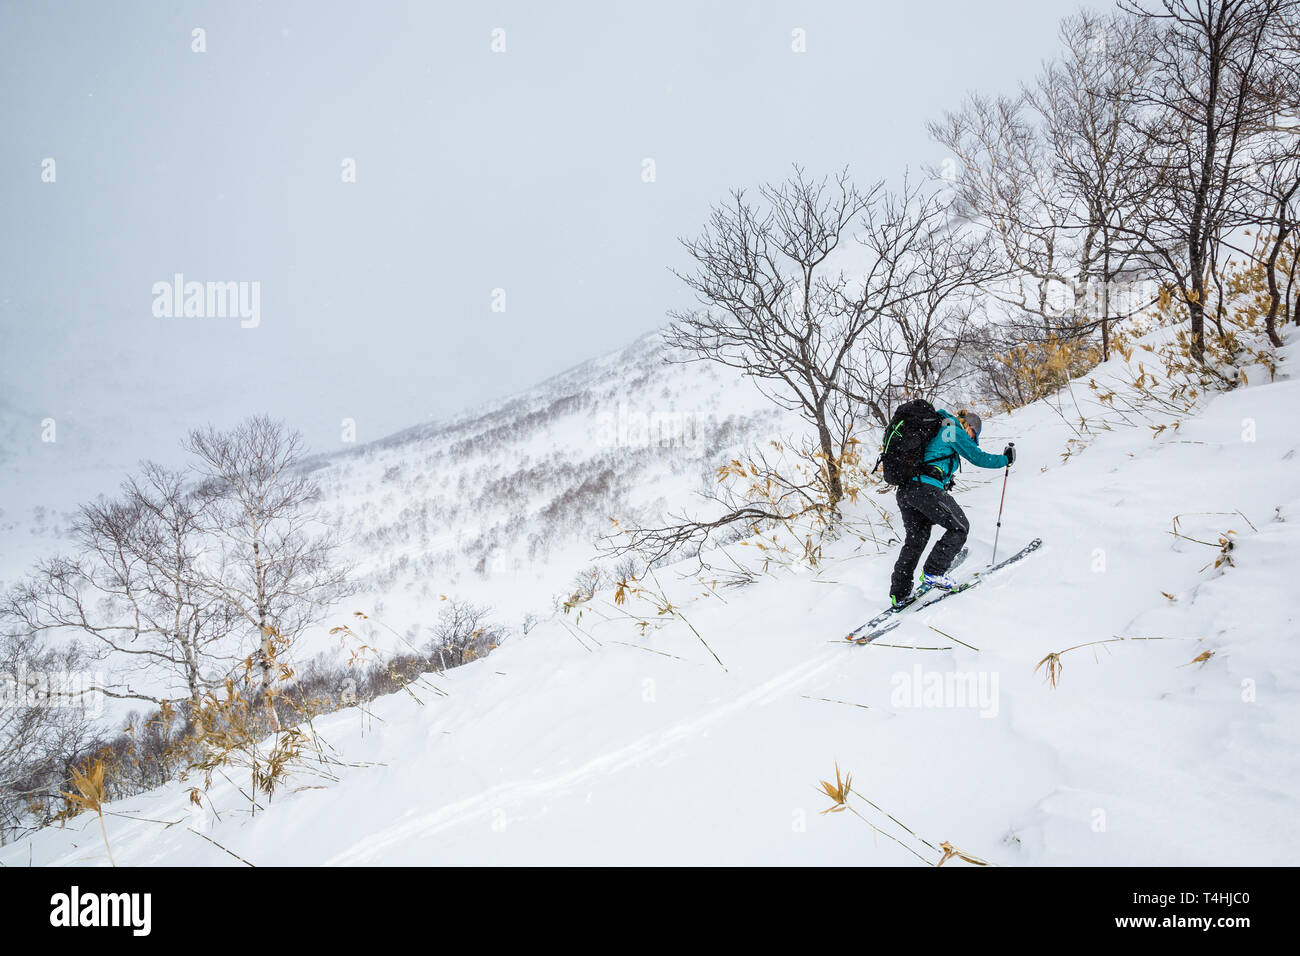 Wandern bergauf in Telemark Ski, eine junge Frau steigt in der Nähe von Niseko Mountain im Hinterland von Hokkaido, Japan. Backcountry powder Skiing. Stockfoto